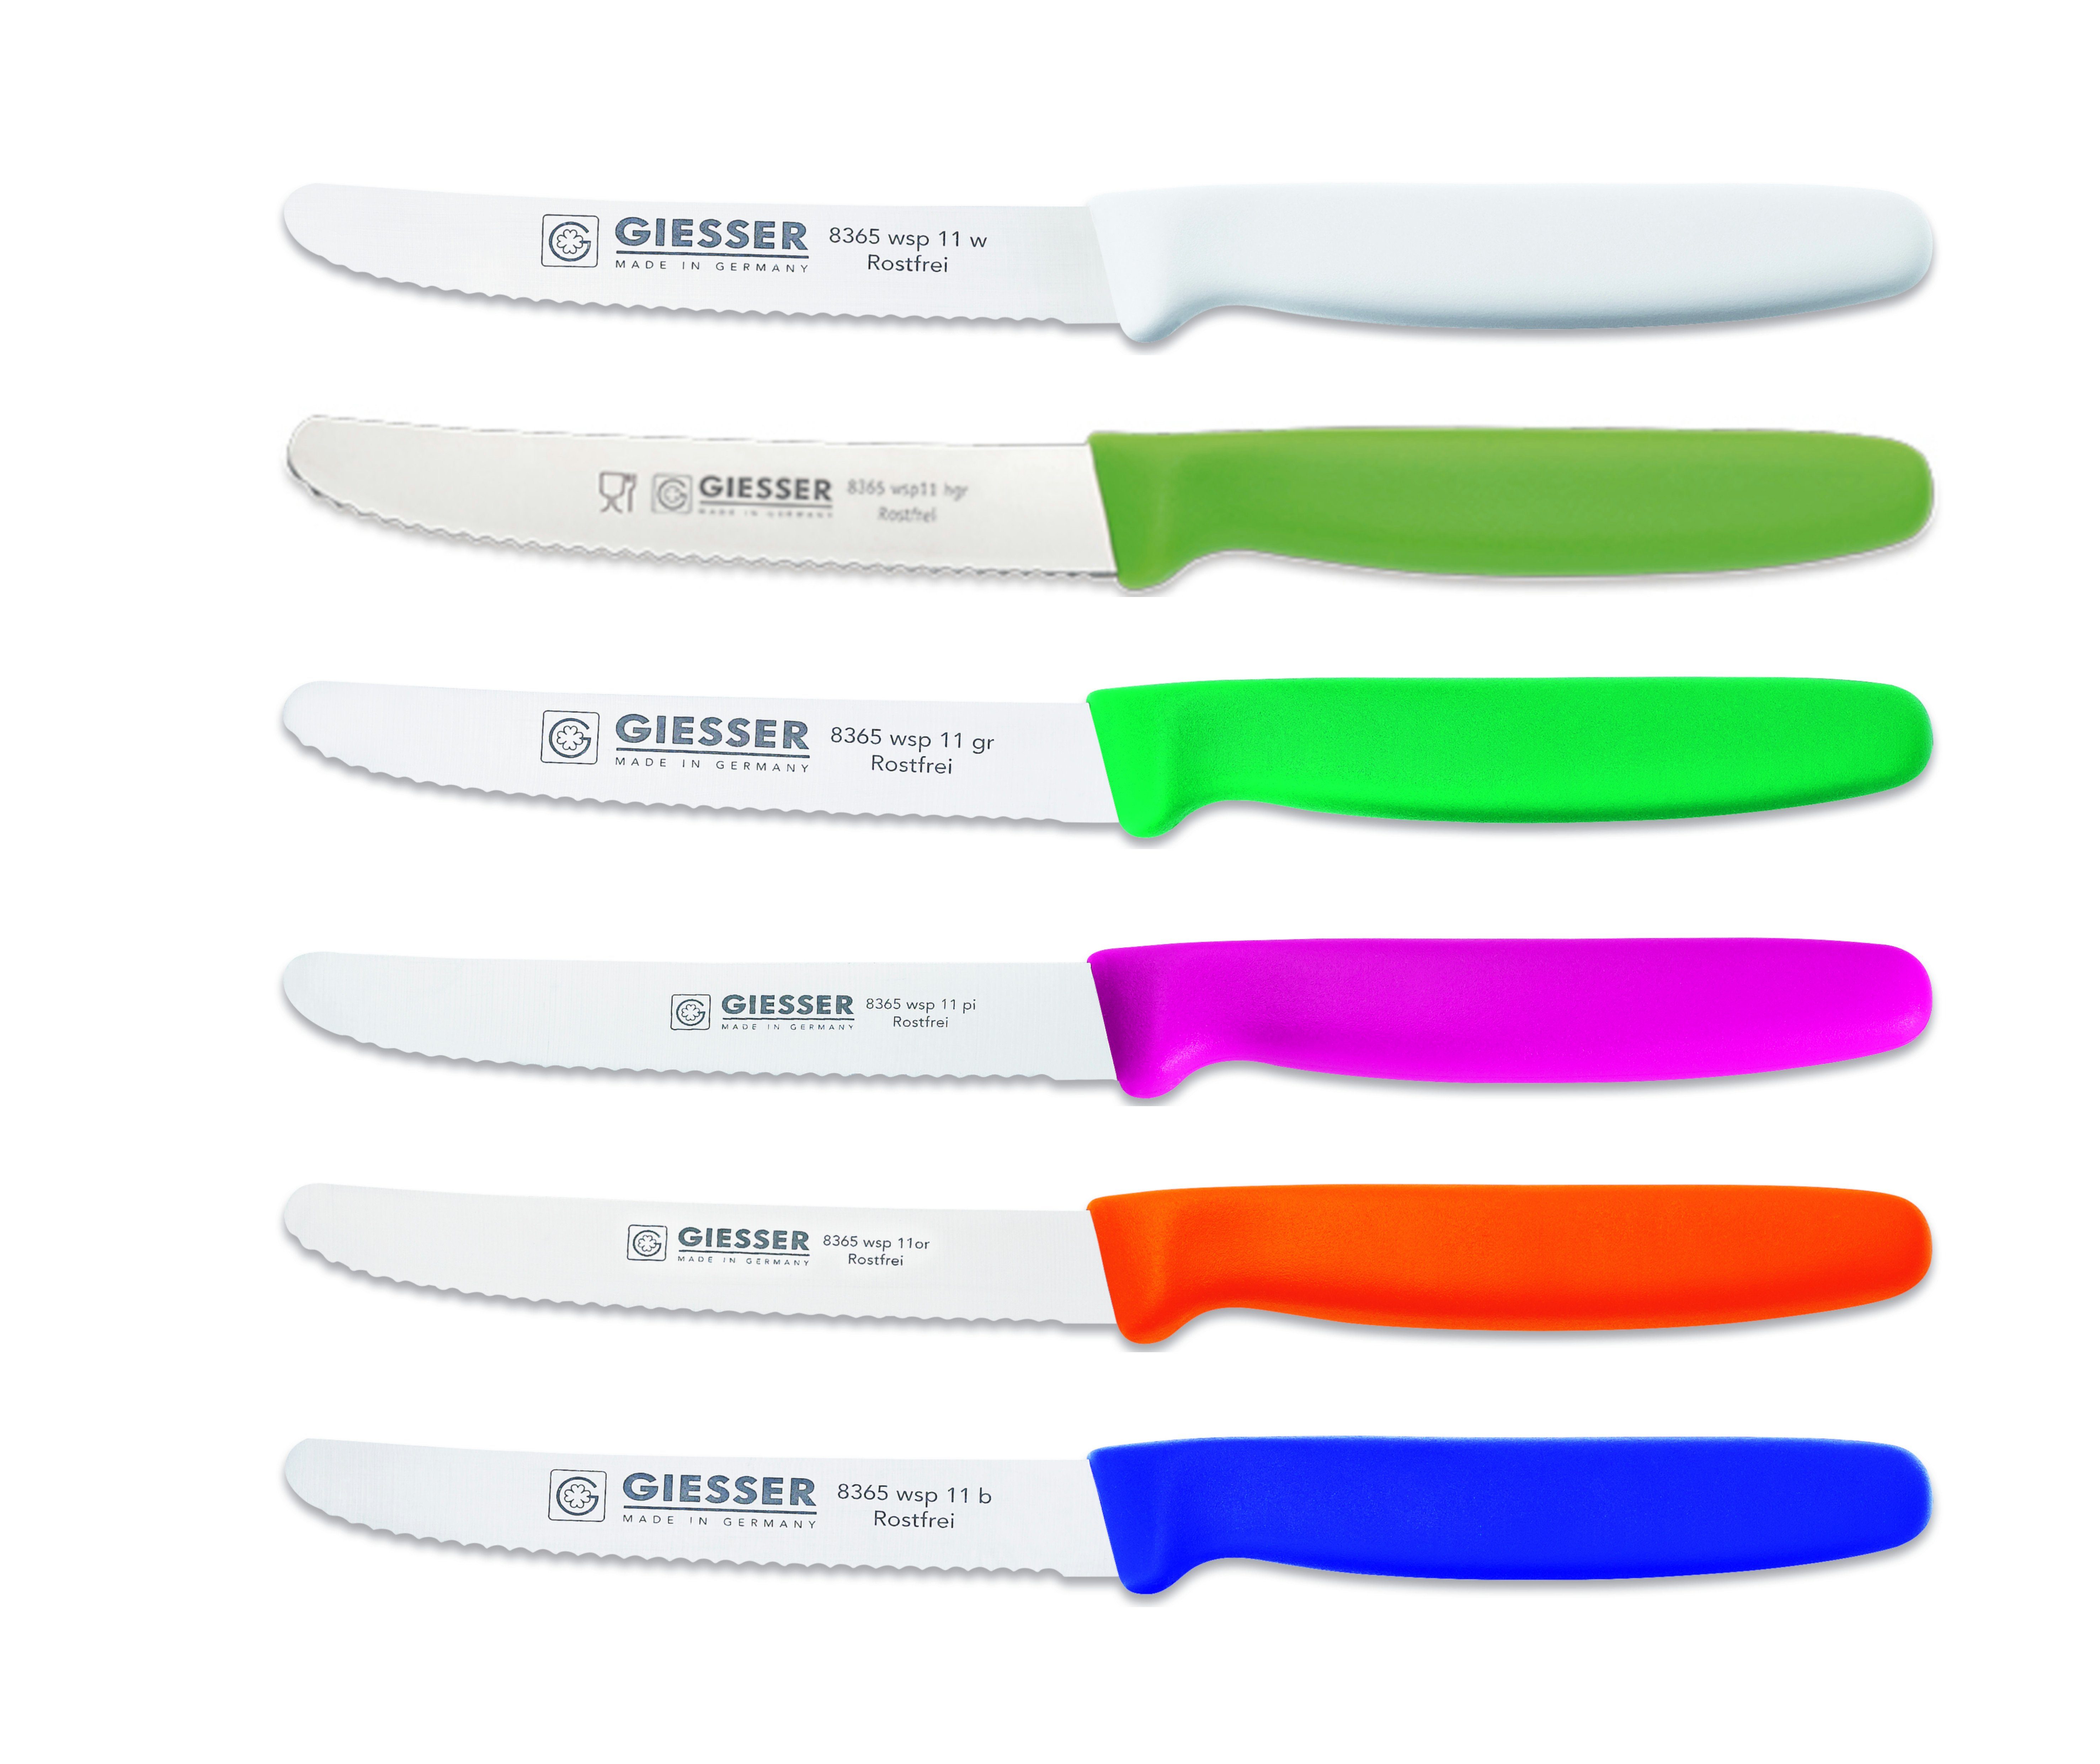 Giesser Messer Tomatenmesser Brötchenmesser 8365 wsp 11-6, 6er Set bunt gemischt; 3mm Wellenschliff; extrem Scharf w-hgr-gr-pi-or-b